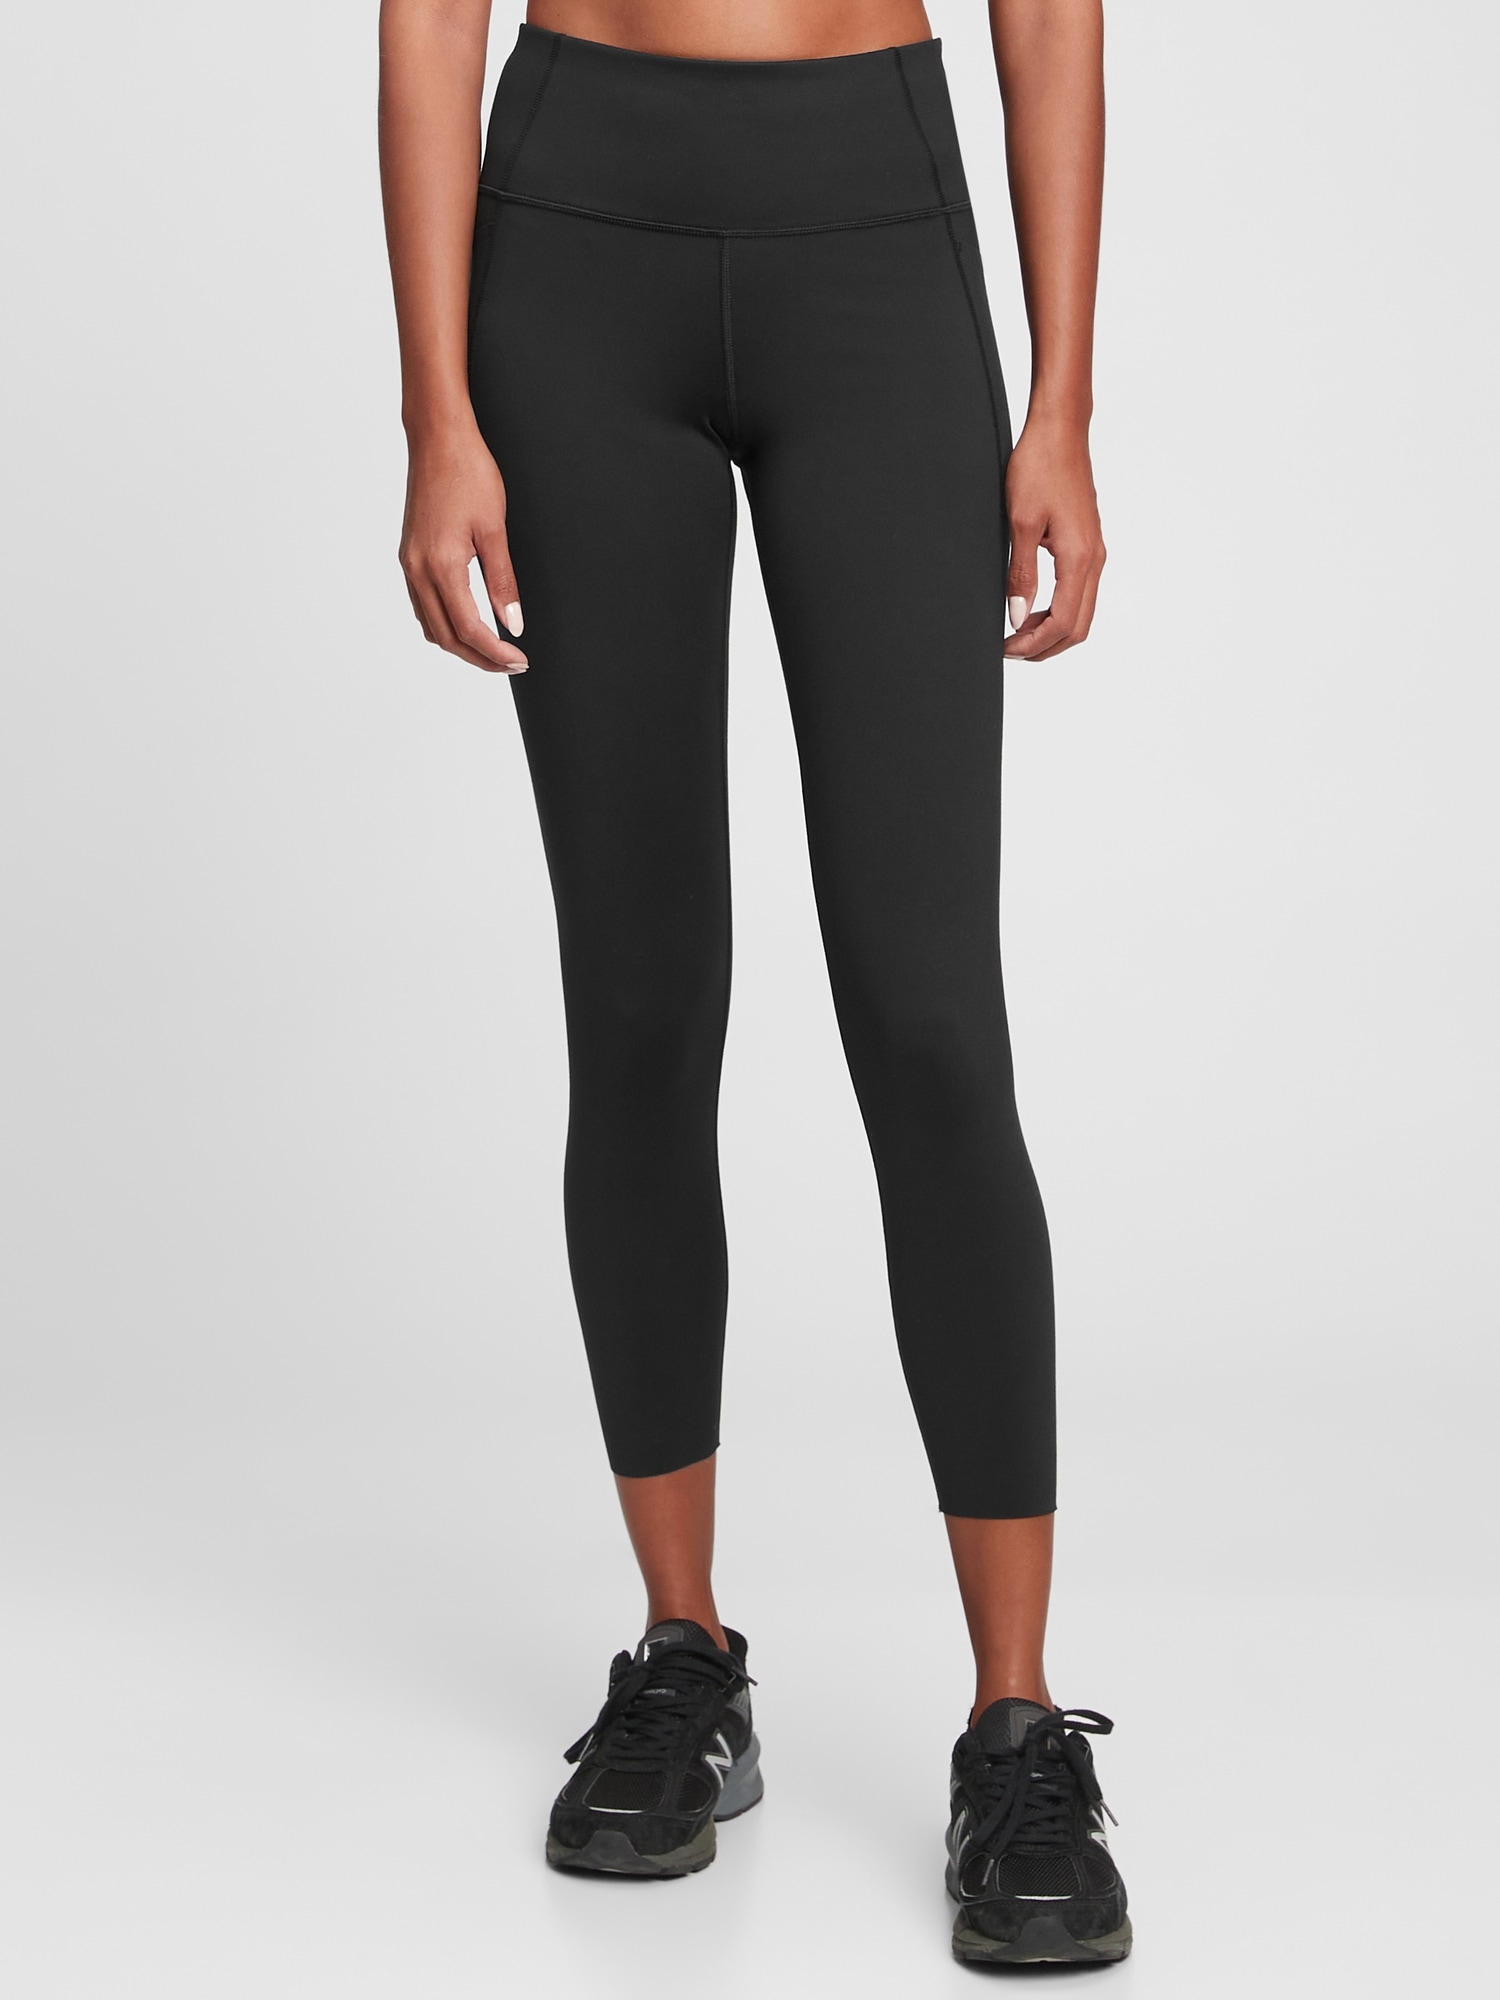  792309-00 Legíny GapFit s vysokým pasem Černá - Women's  high gloss leggings - GAP - 64.91 € - outdoorové oblečení a vybavení shop